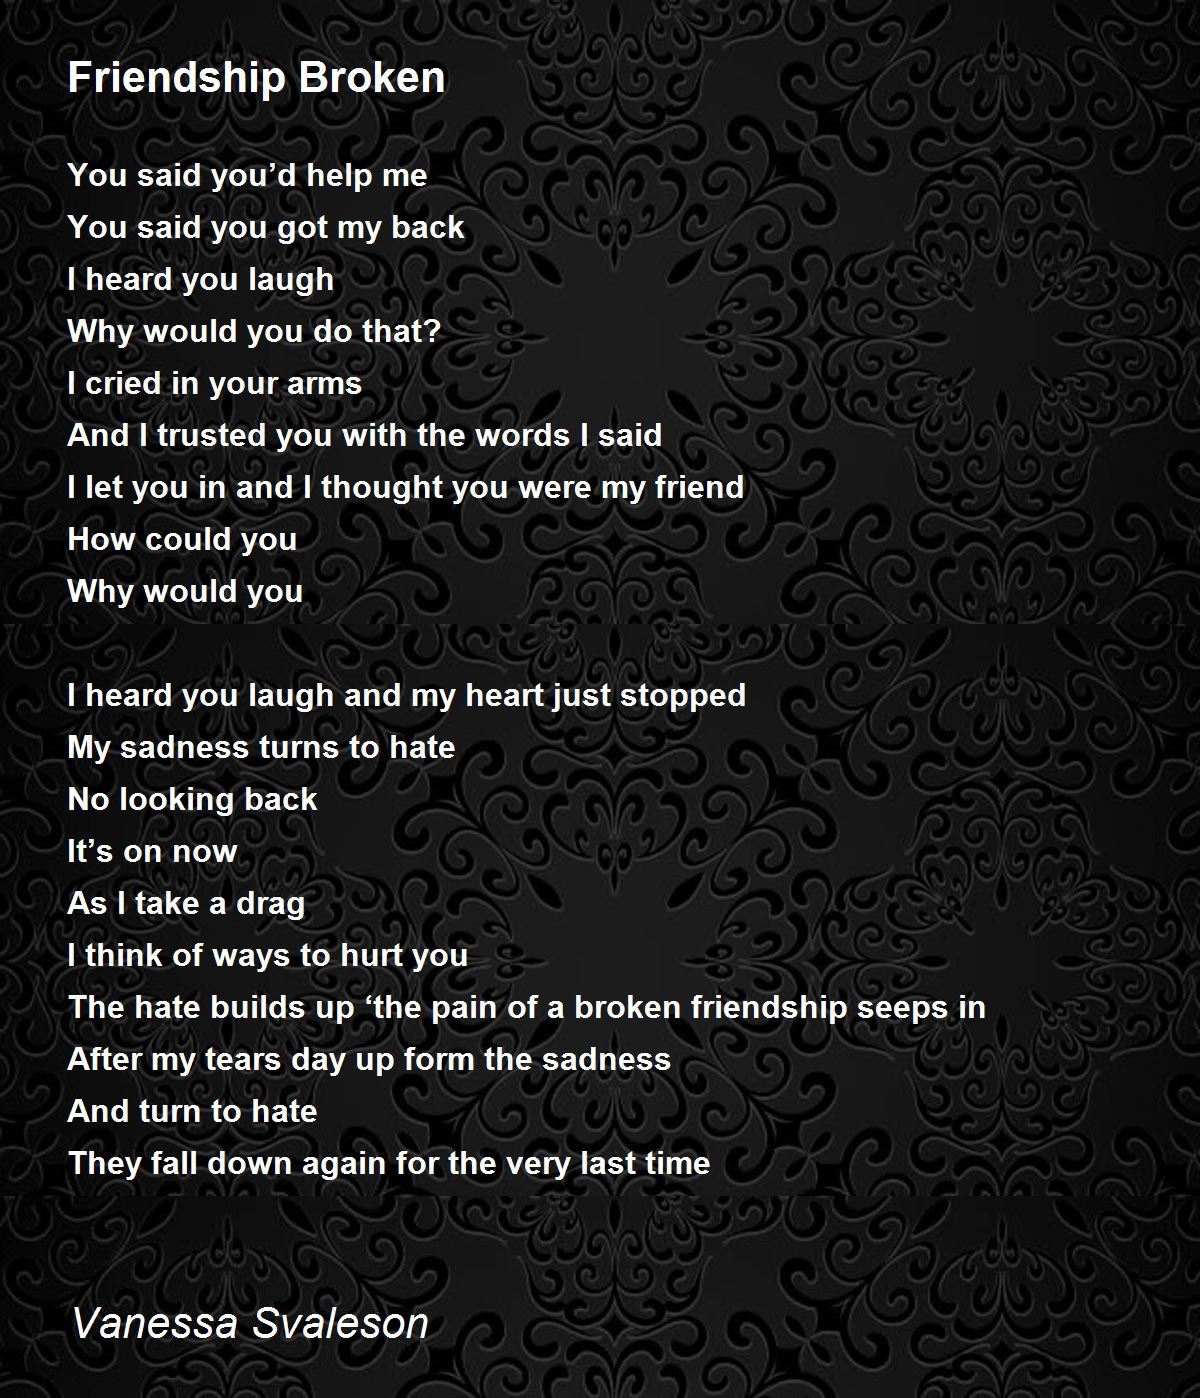 Friendship Broken - Friendship Broken Poem by Vanessa Svaleson